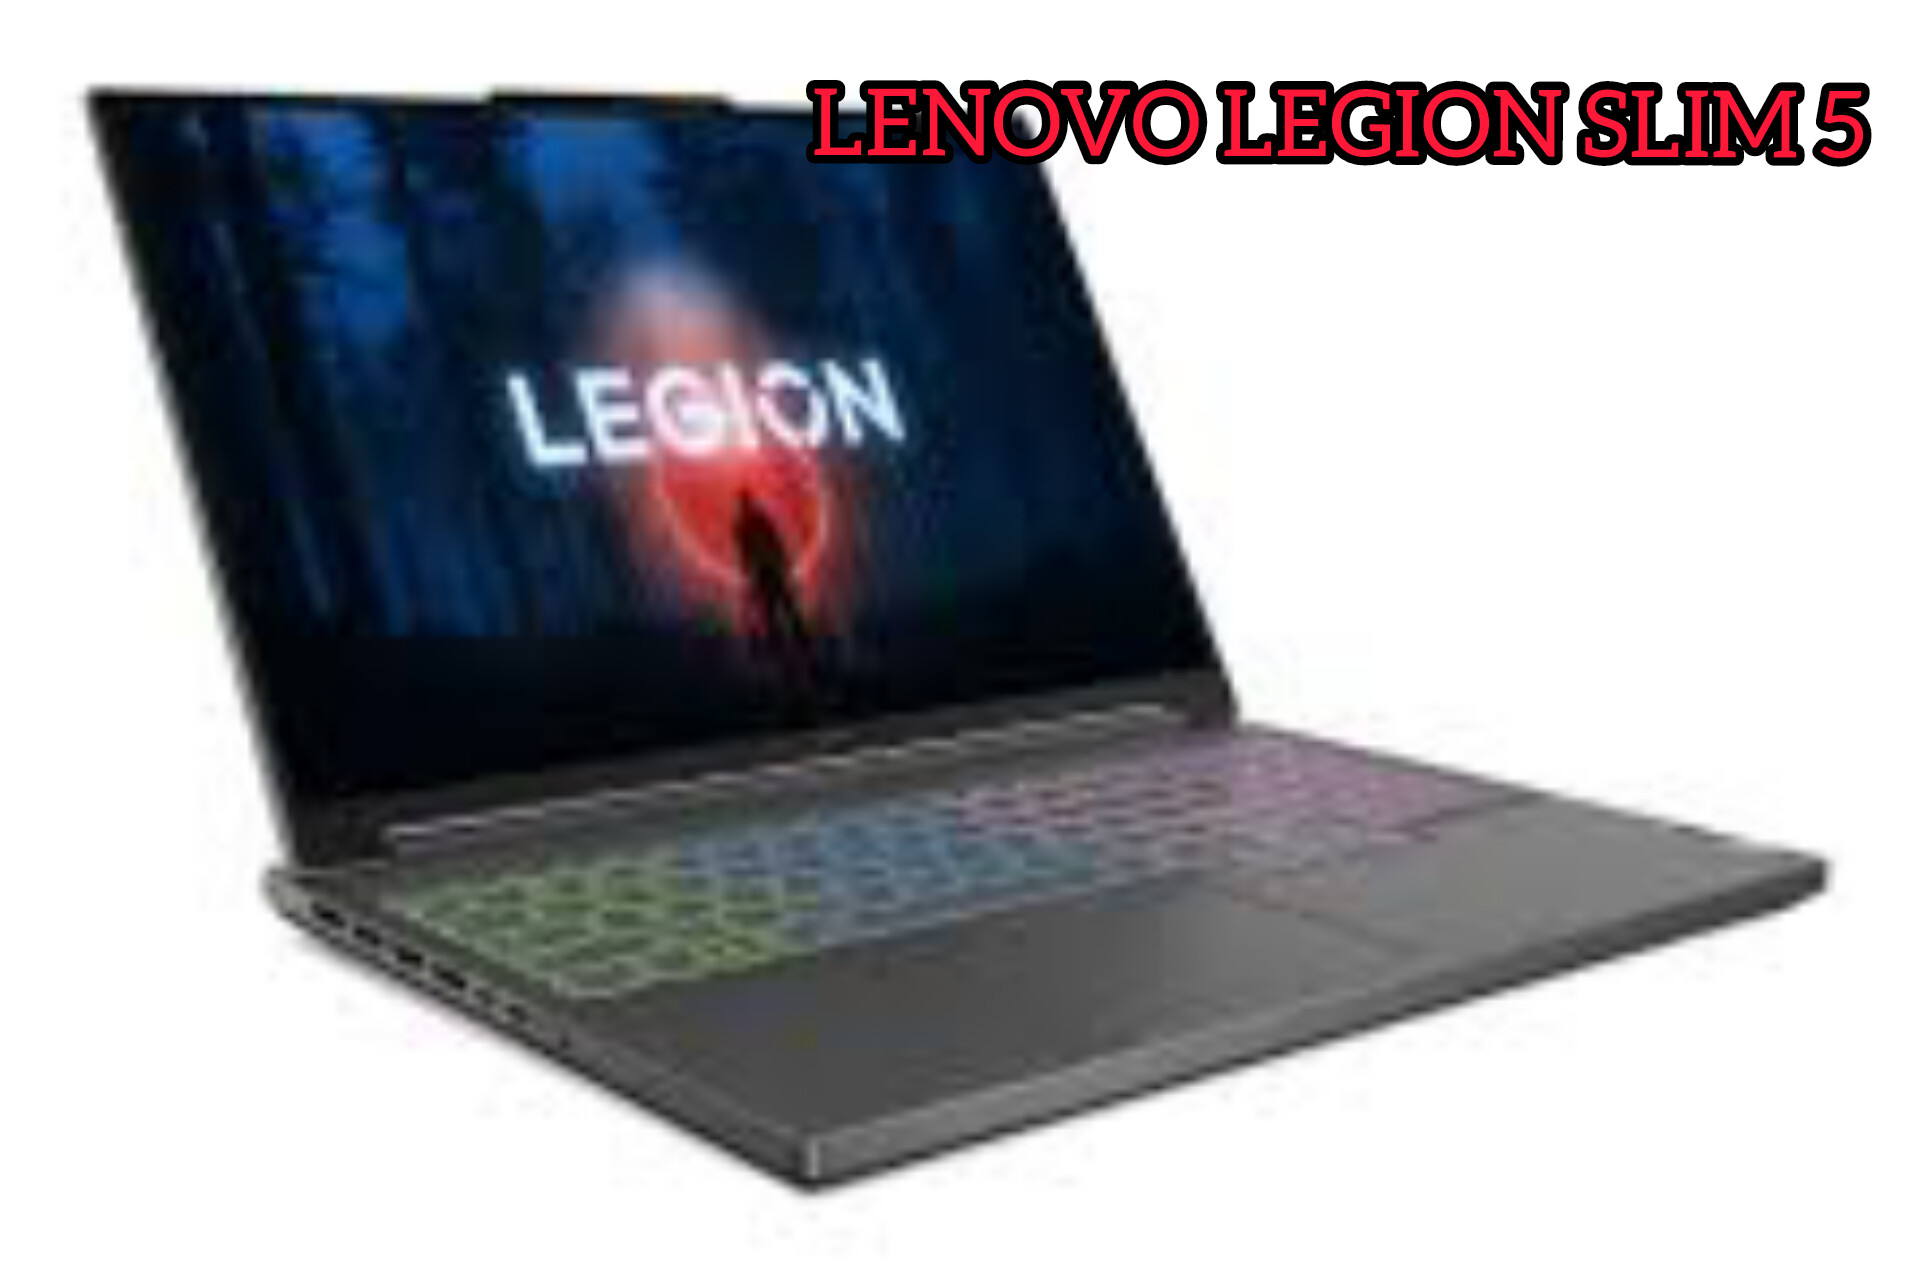 LENOVO LEGION SLIM 5: Spesifikasi Laptop Gaming Elegan Dengan Performa Yang Powerful